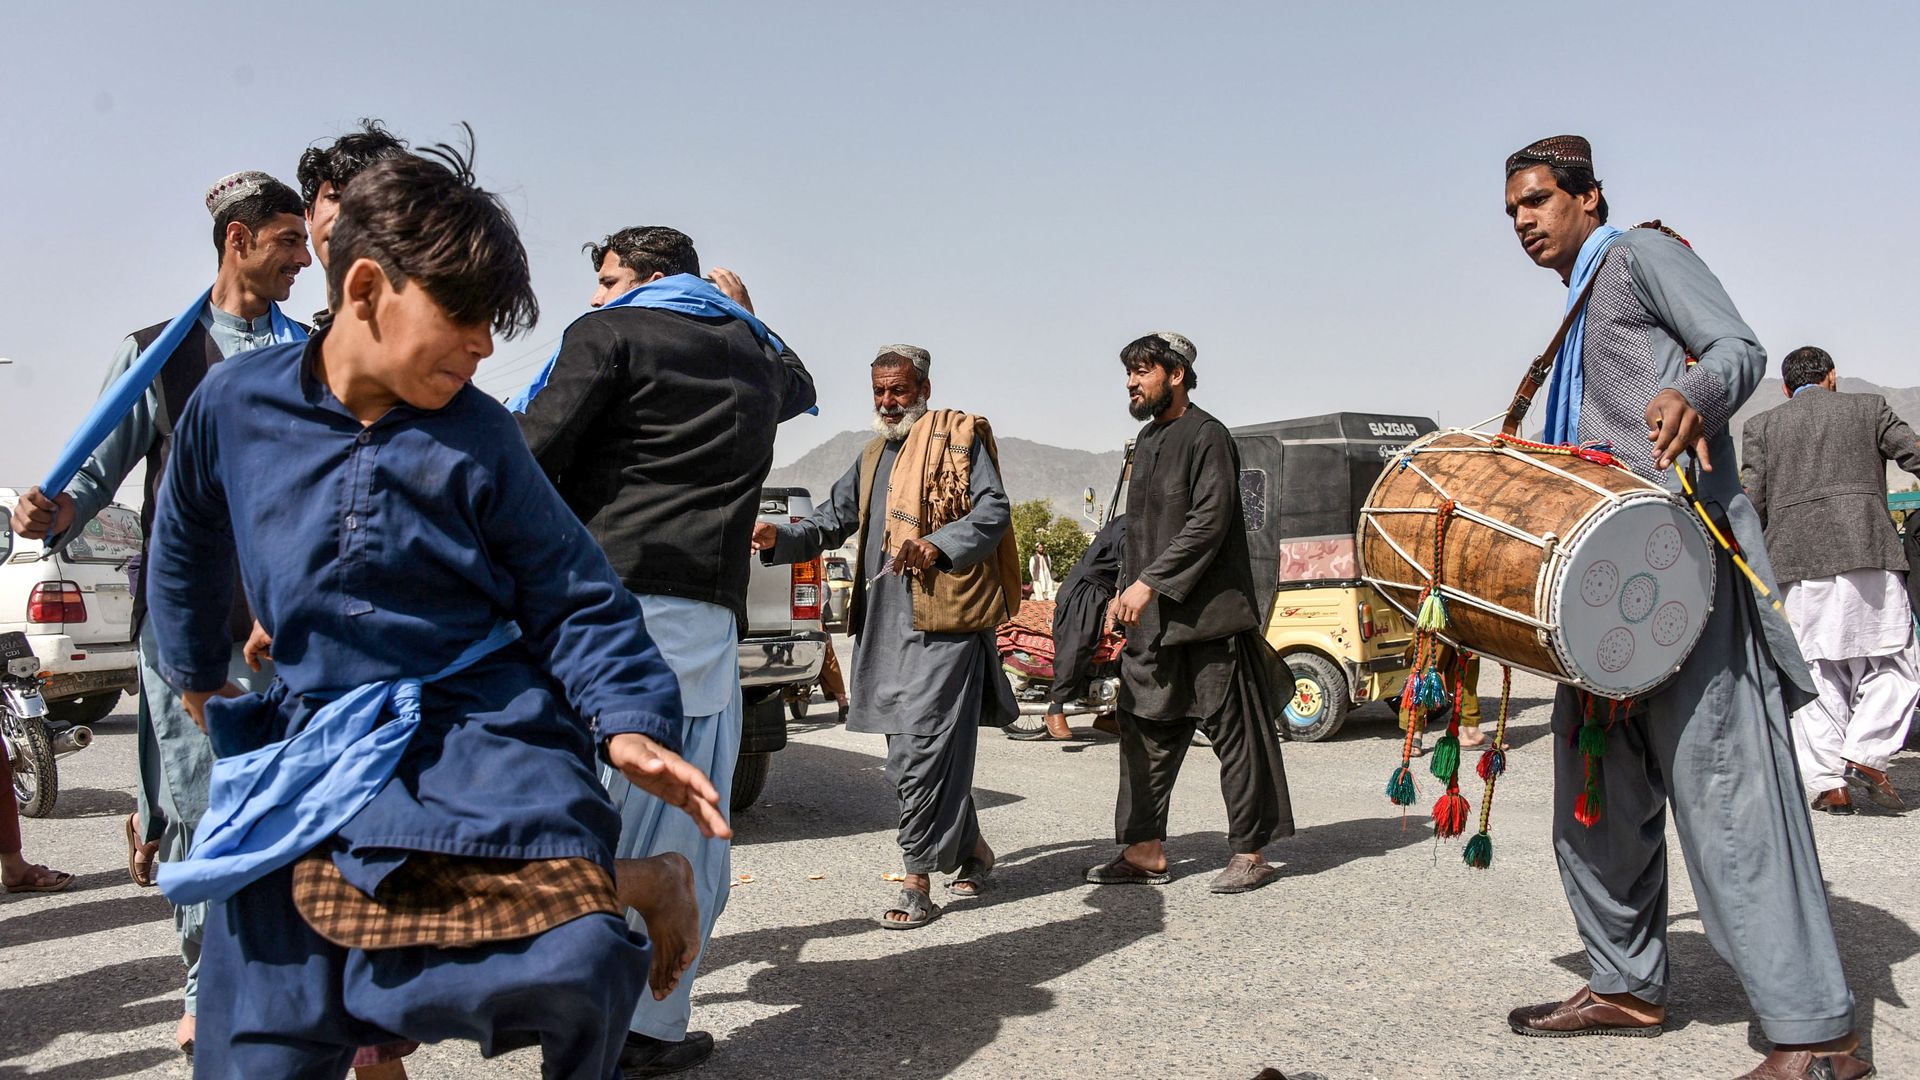 People dancing in Afghanistan